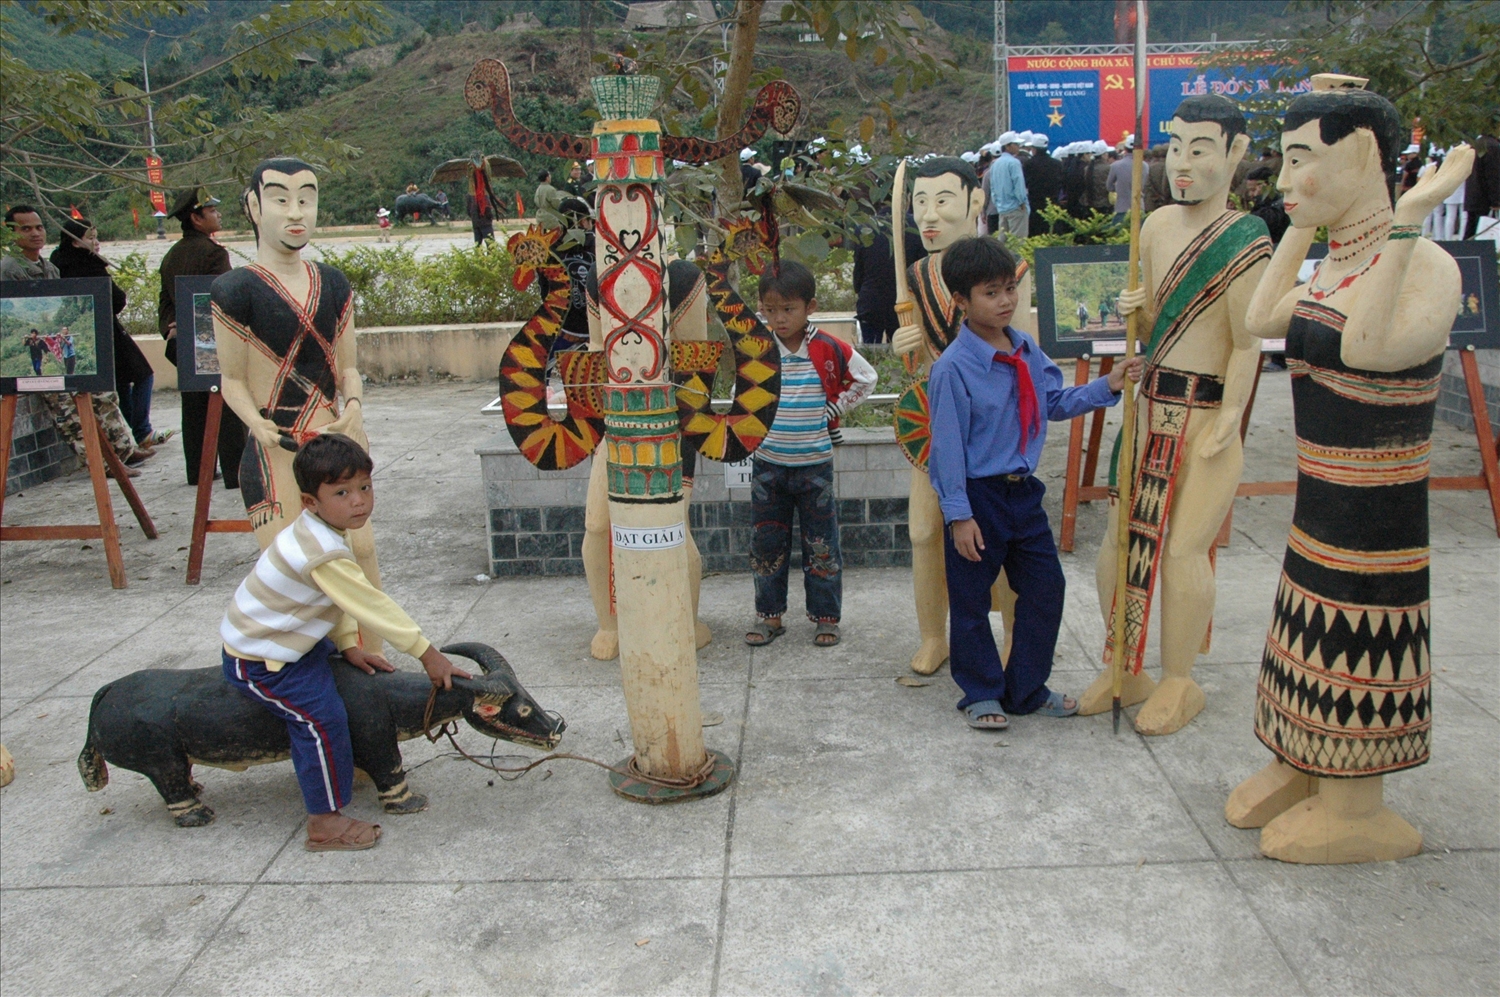 Nhóm tượng điêu khắc gỗ của nghệ nhân Clâu Bh'Lao tham gia cuộc thi sáng tác điêu khăc gỗ dành cho nghệ nhân dân gian huyện Tây Giang, tỉnh Quảng Nam